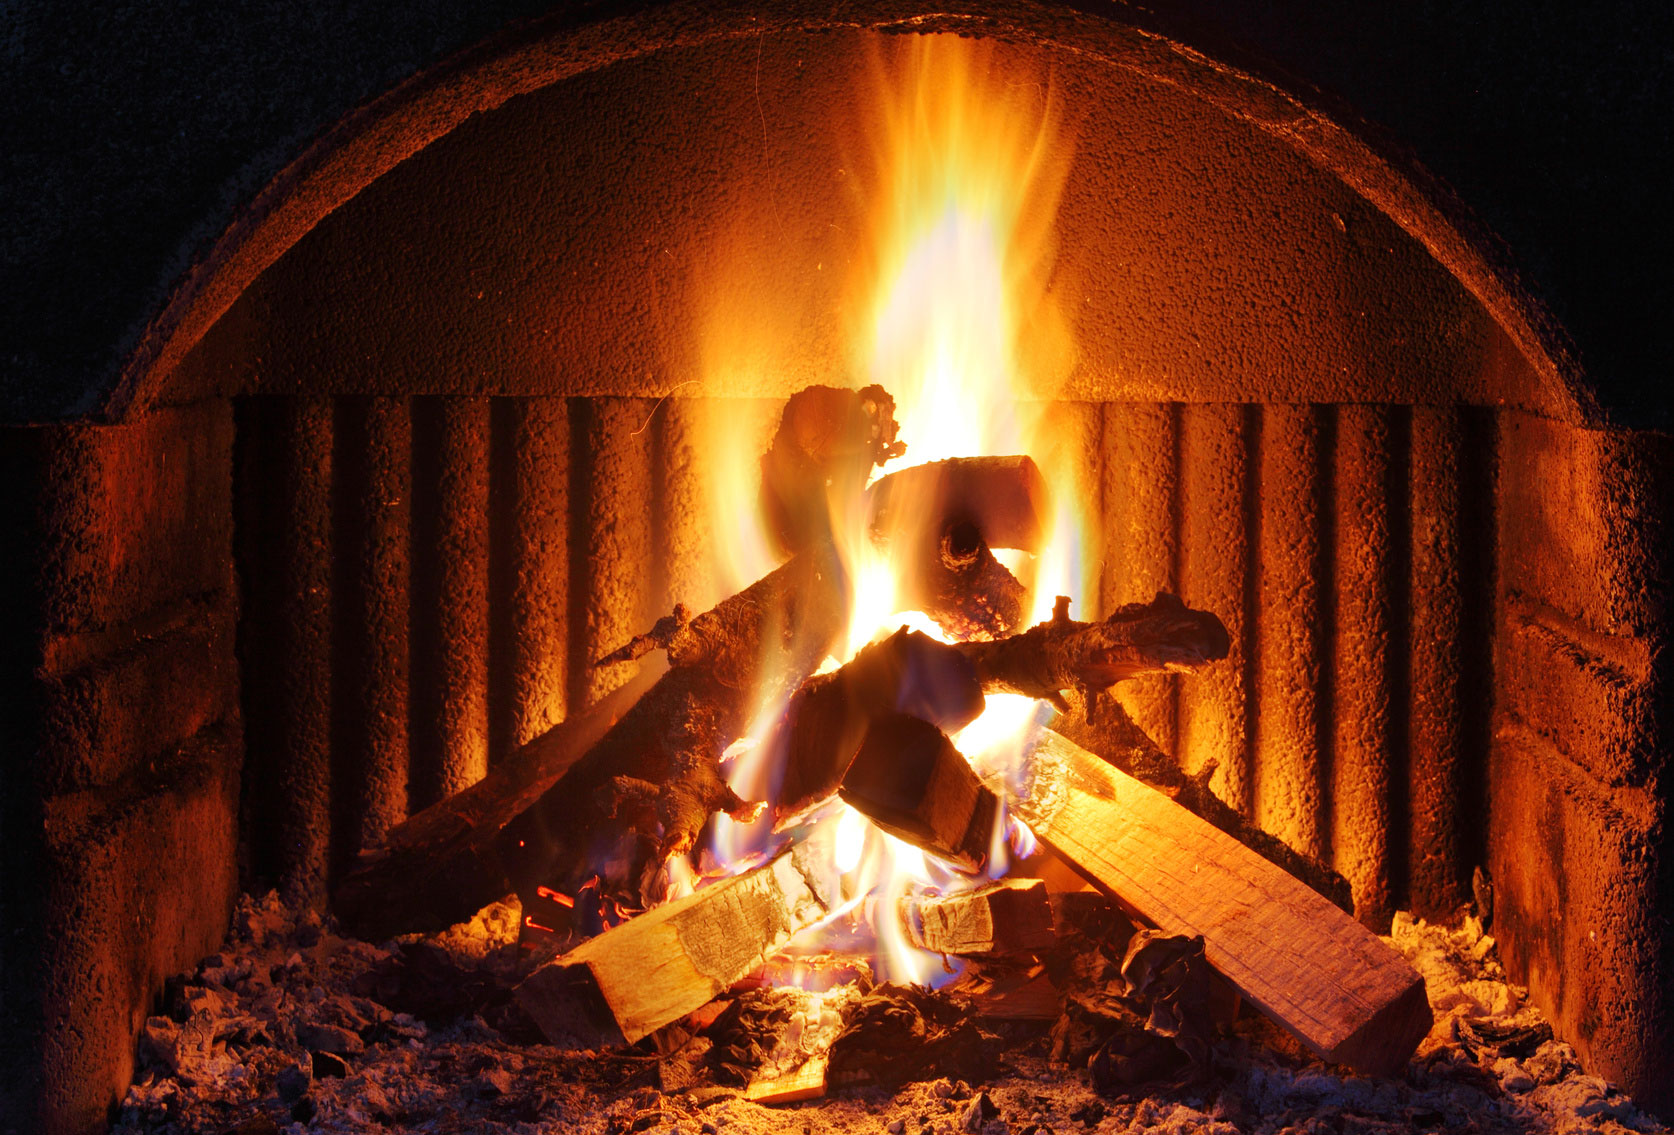 Fireplace Safety & Maintenance Tips